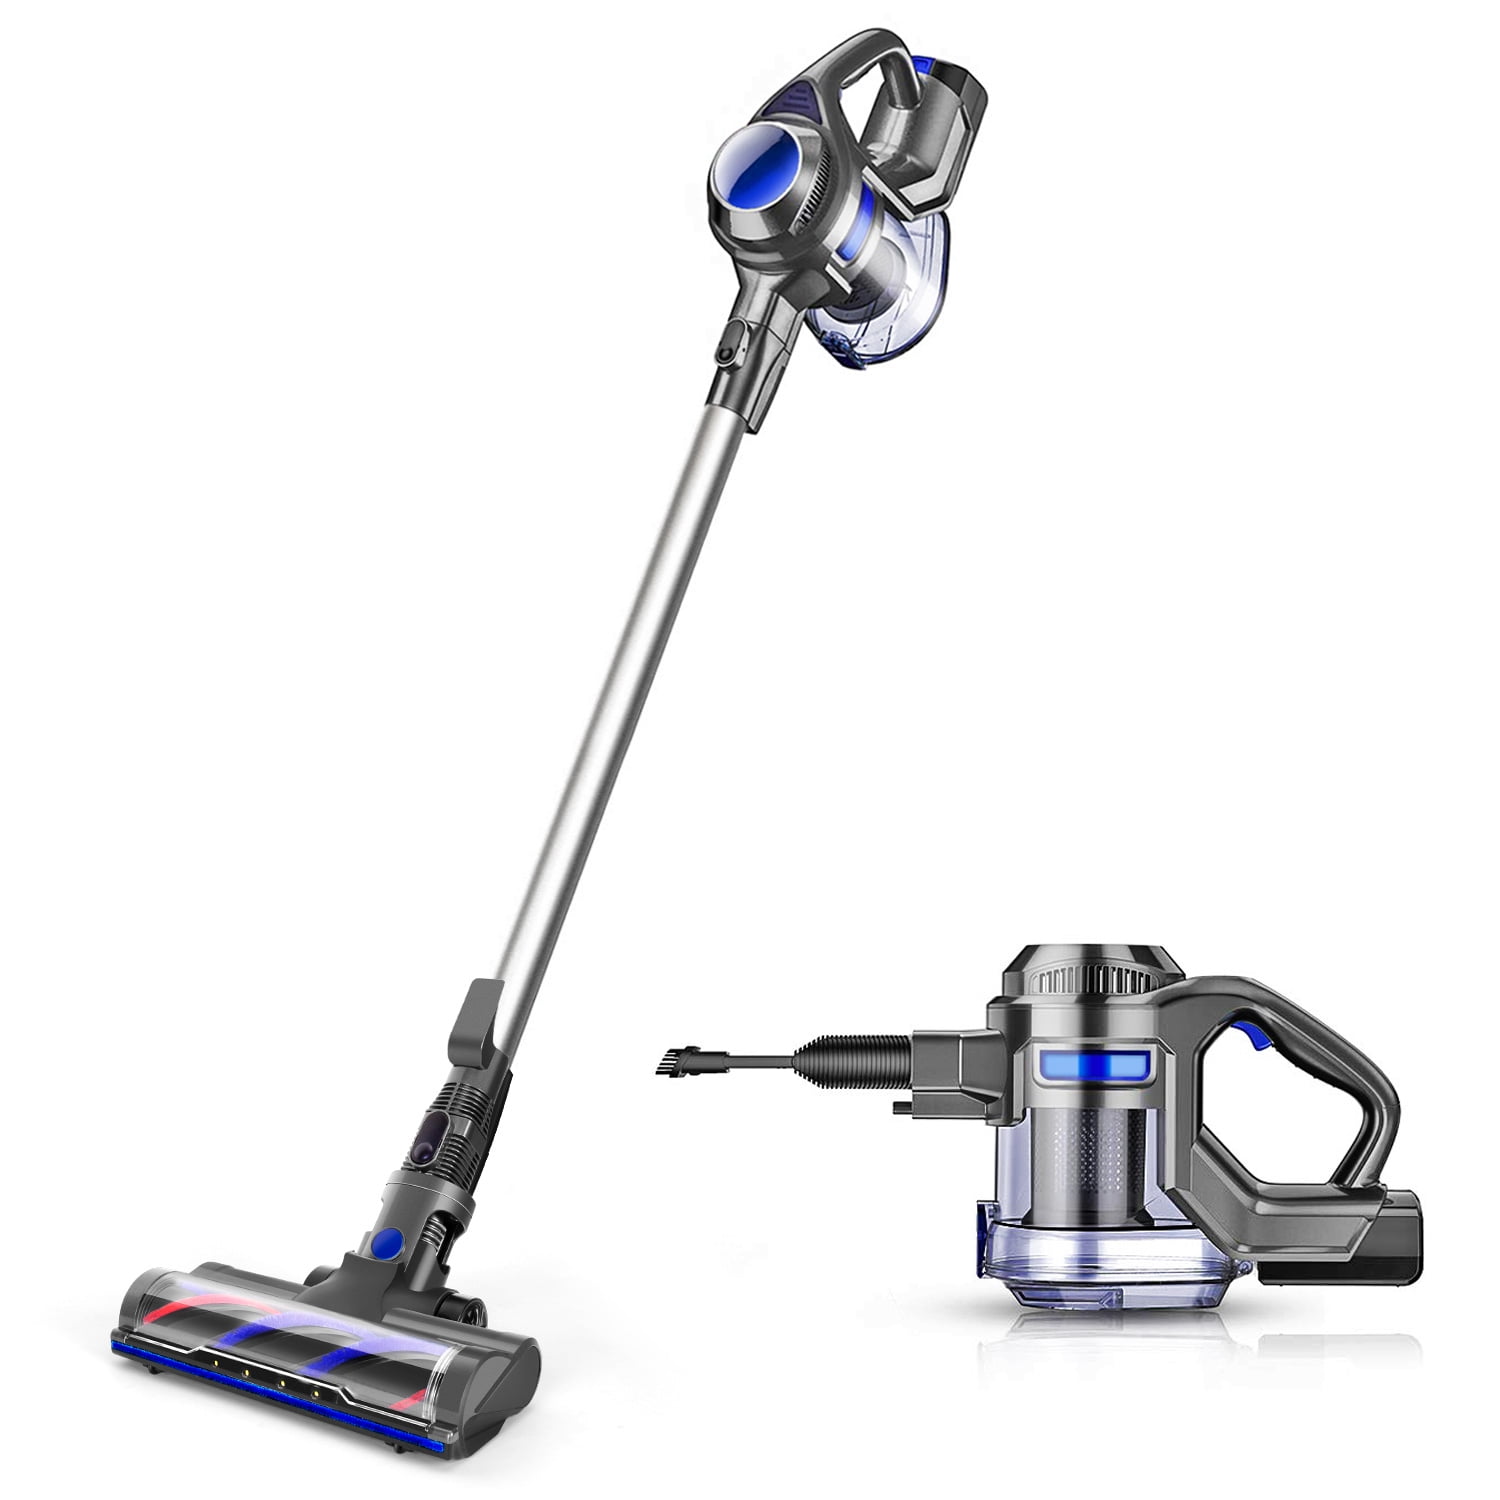 Moosoo 4 In 1 Cordless Vacuum, Carpet Hardwood Floor Vacuum Cleaner